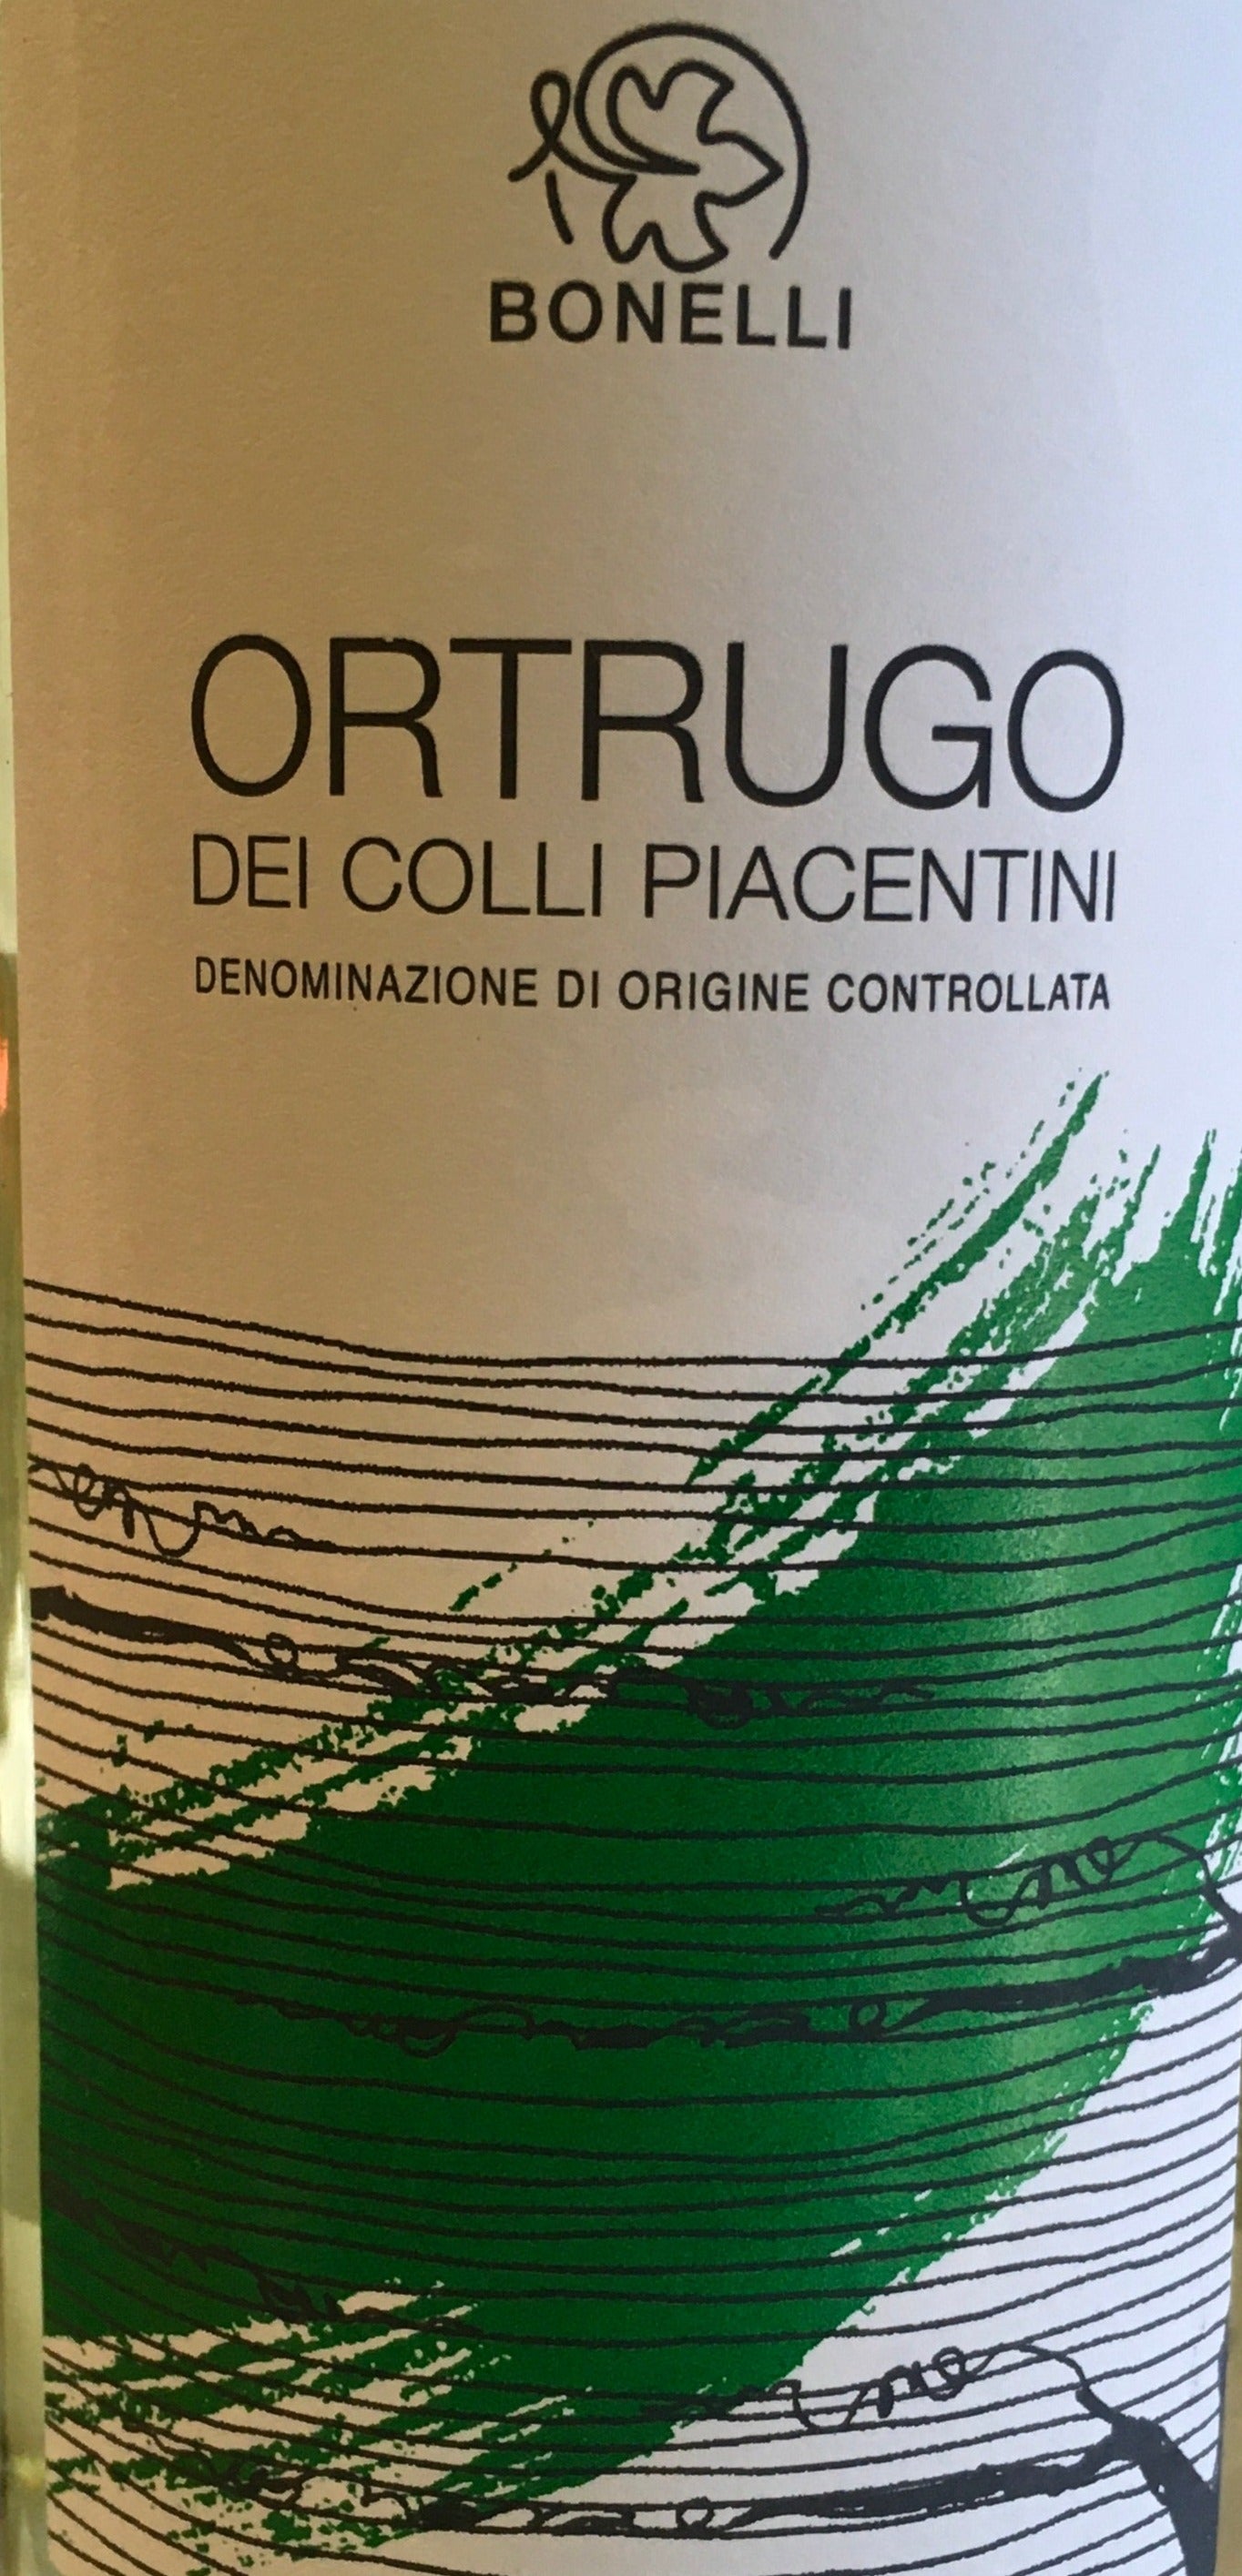 Wine DOC Piacentini Ortrugo Colli Feed - Bonelli The – dei